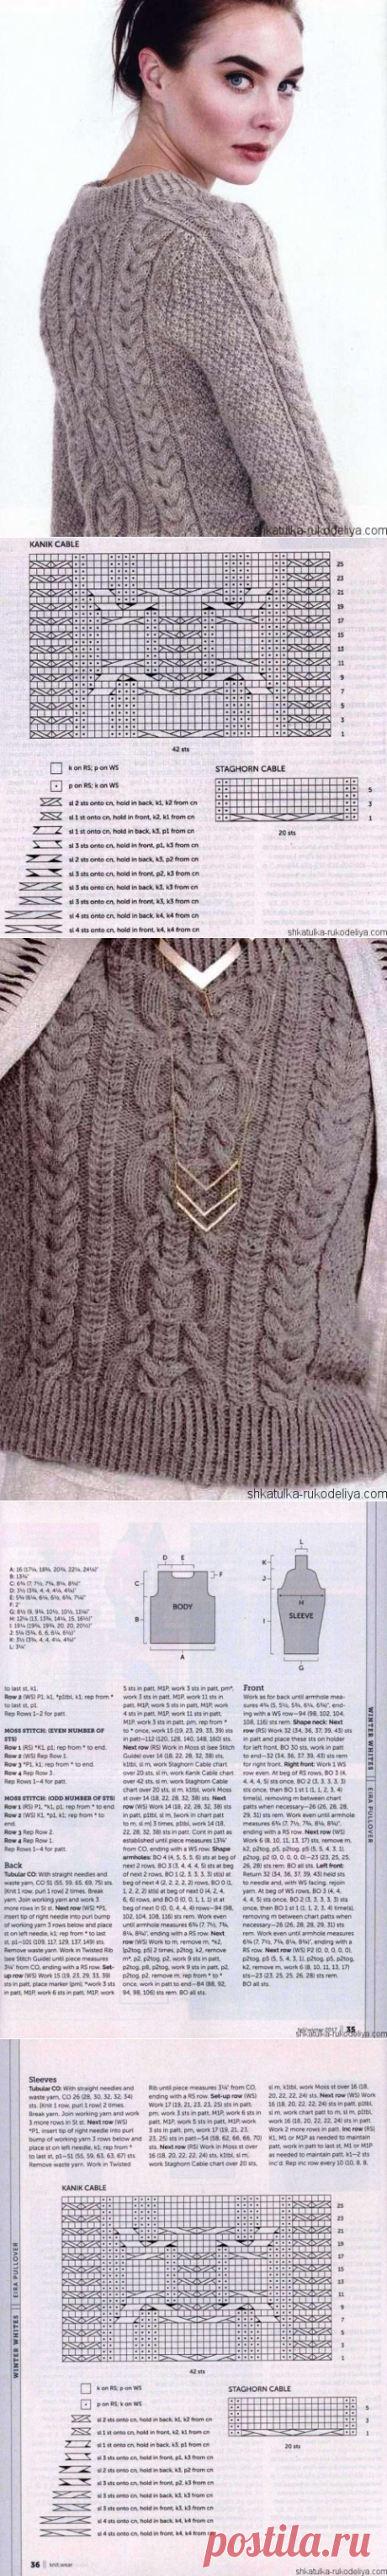 Модный пуловер из аранов. Связать стильный женский пуловер спицами | Шкатулка рукоделия